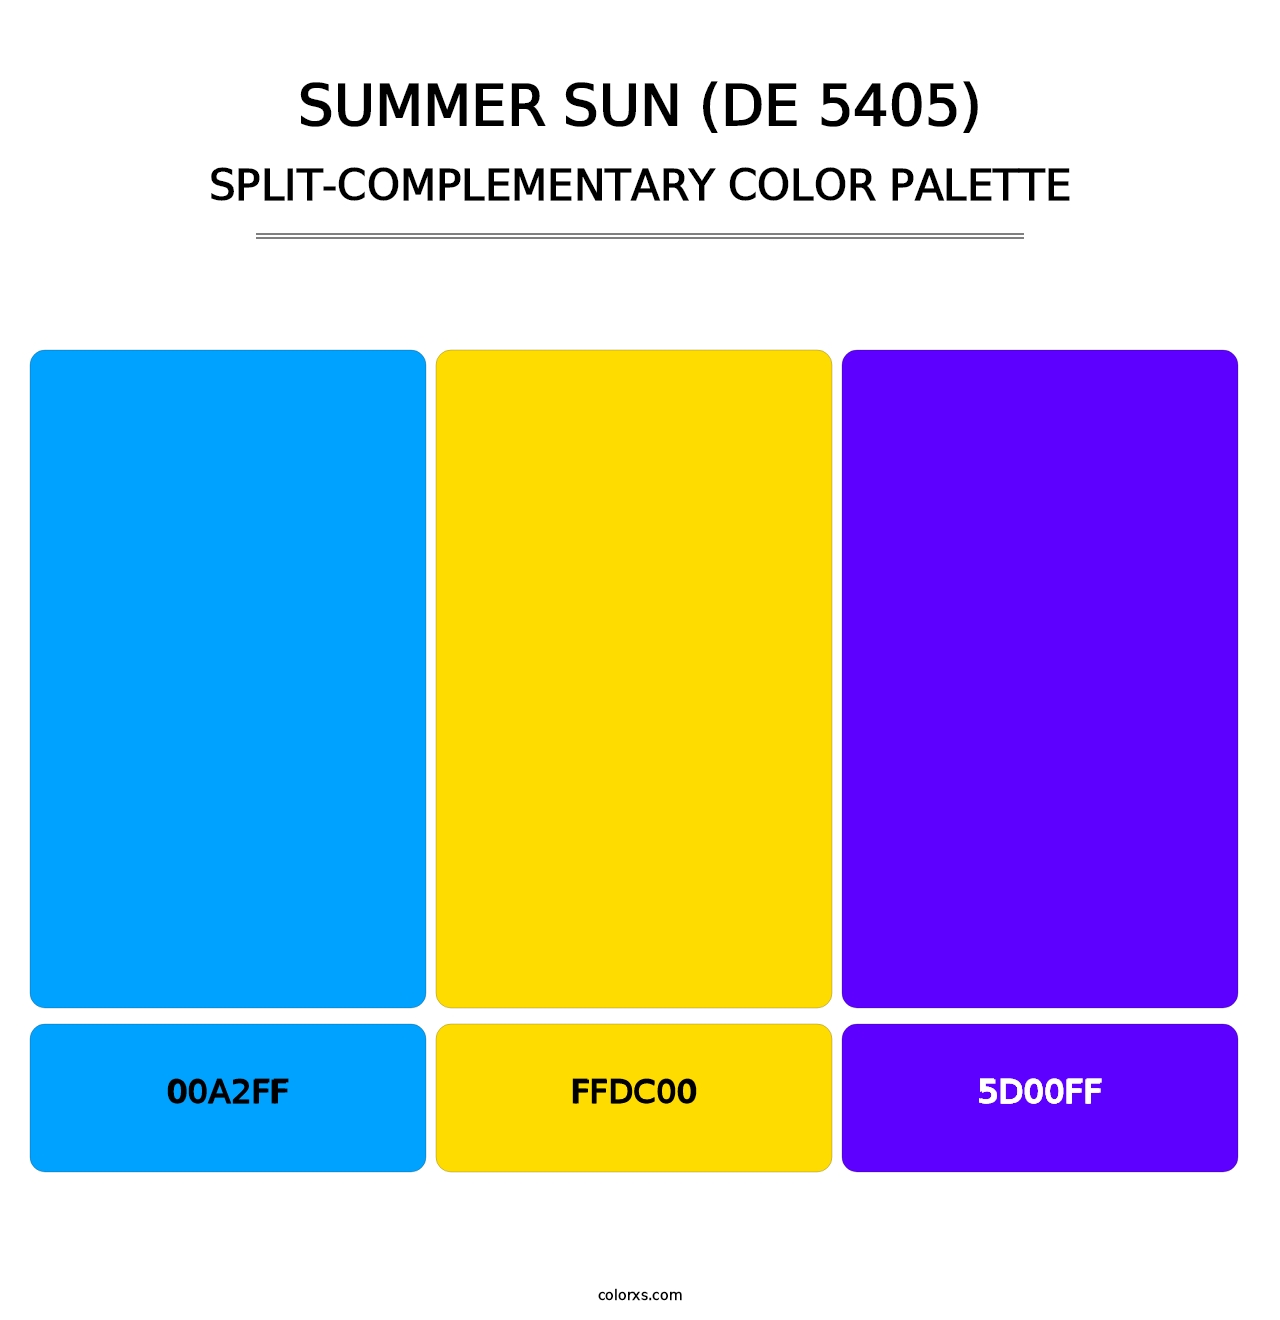 Summer Sun (DE 5405) - Split-Complementary Color Palette